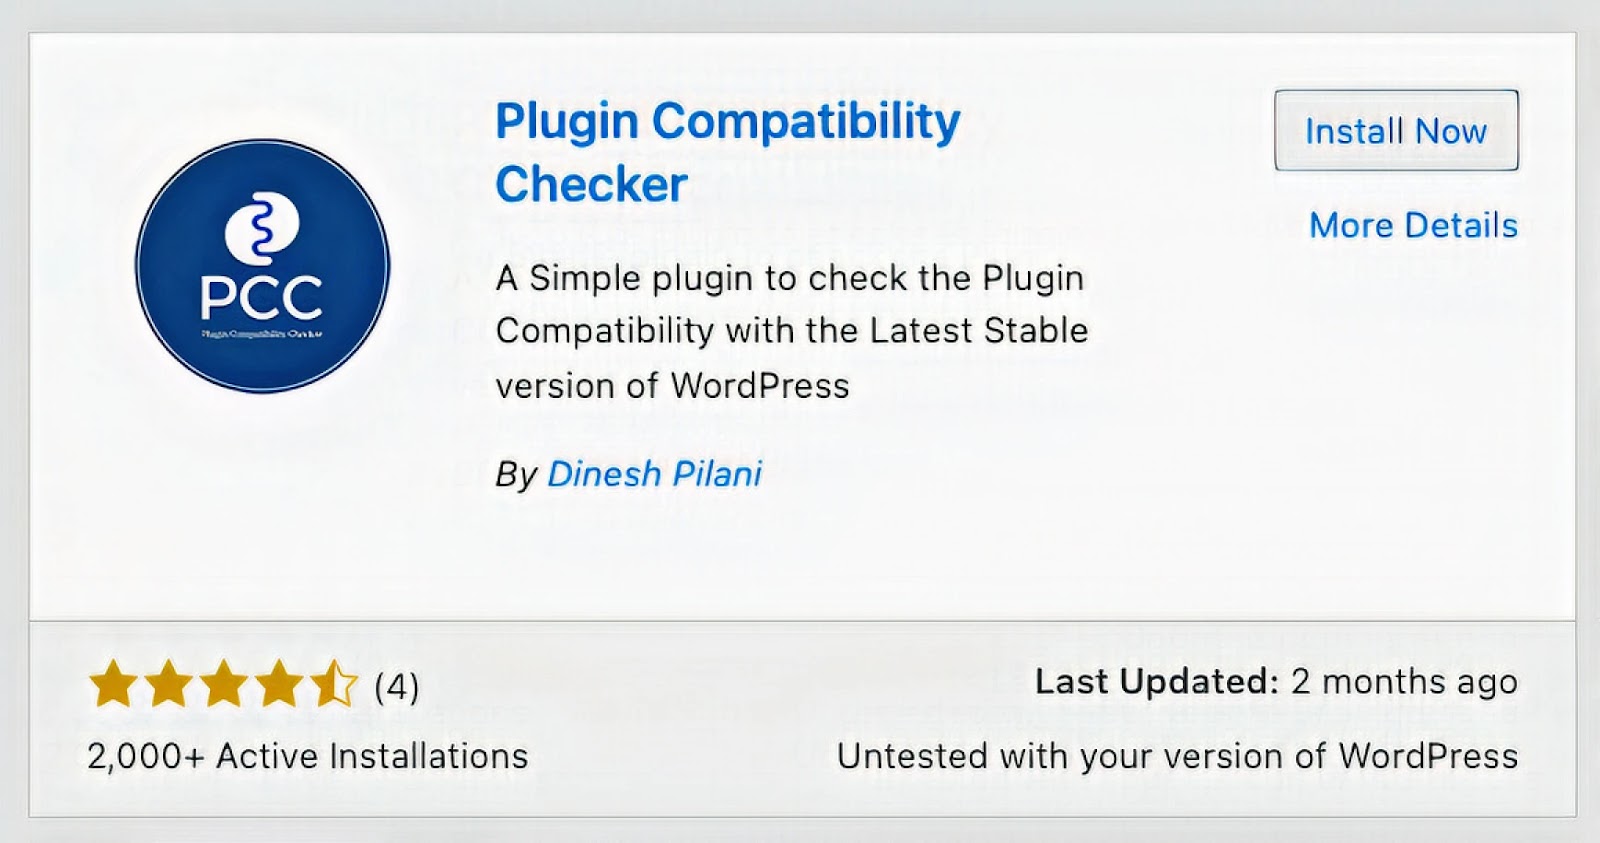 "Plugin Compatibility Checker" en foco con su descripción, botón para instalar, última actualización y calificación promedio de 4 estrellas.